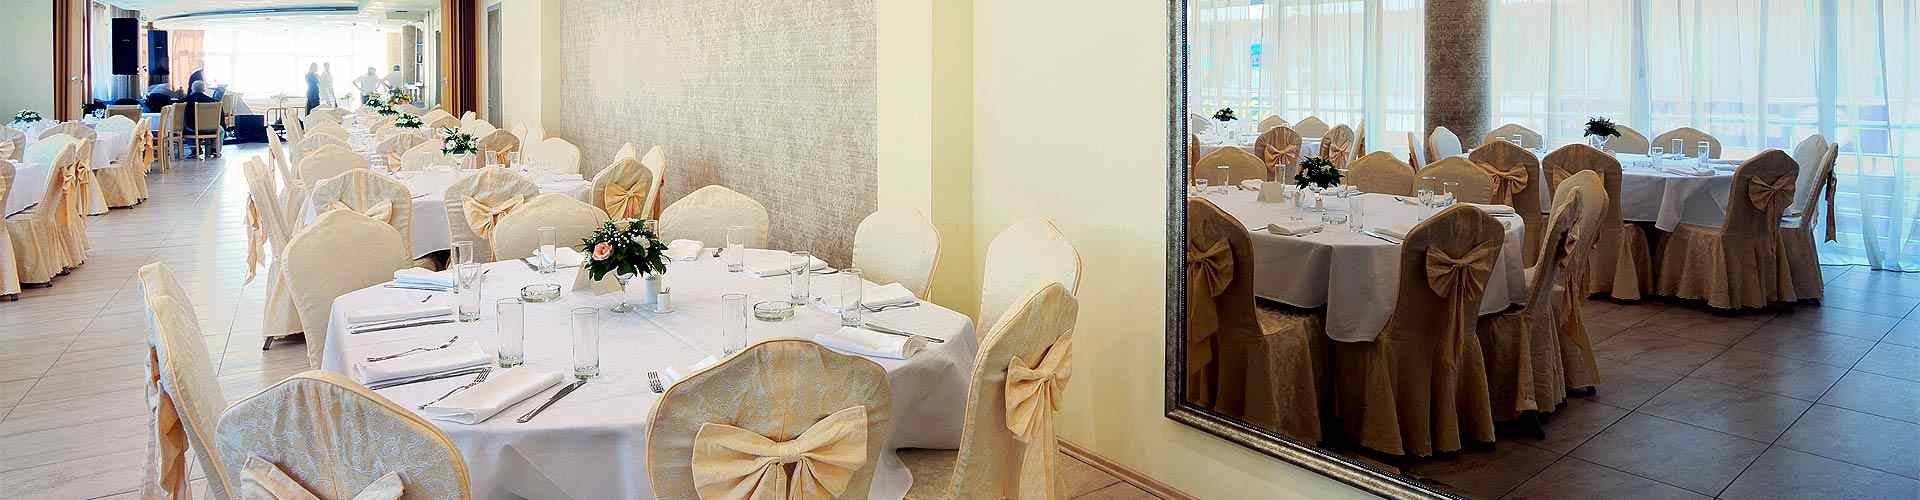 Restaurantes para bodas 2019 en Coceña